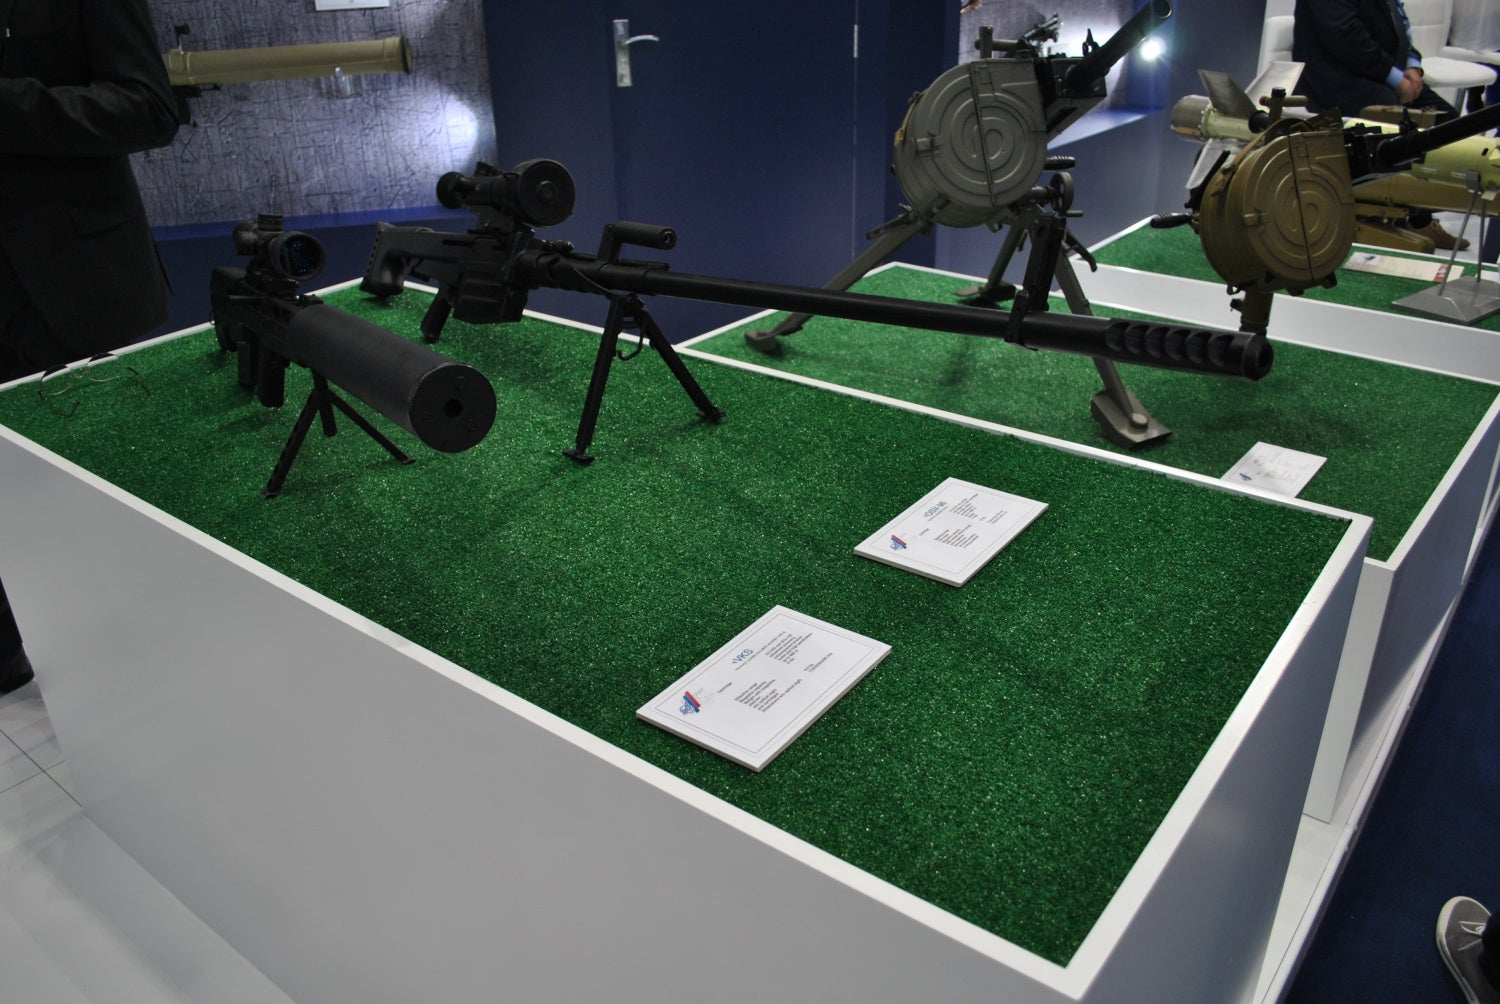 OSV-96 and VKS sniper rifles